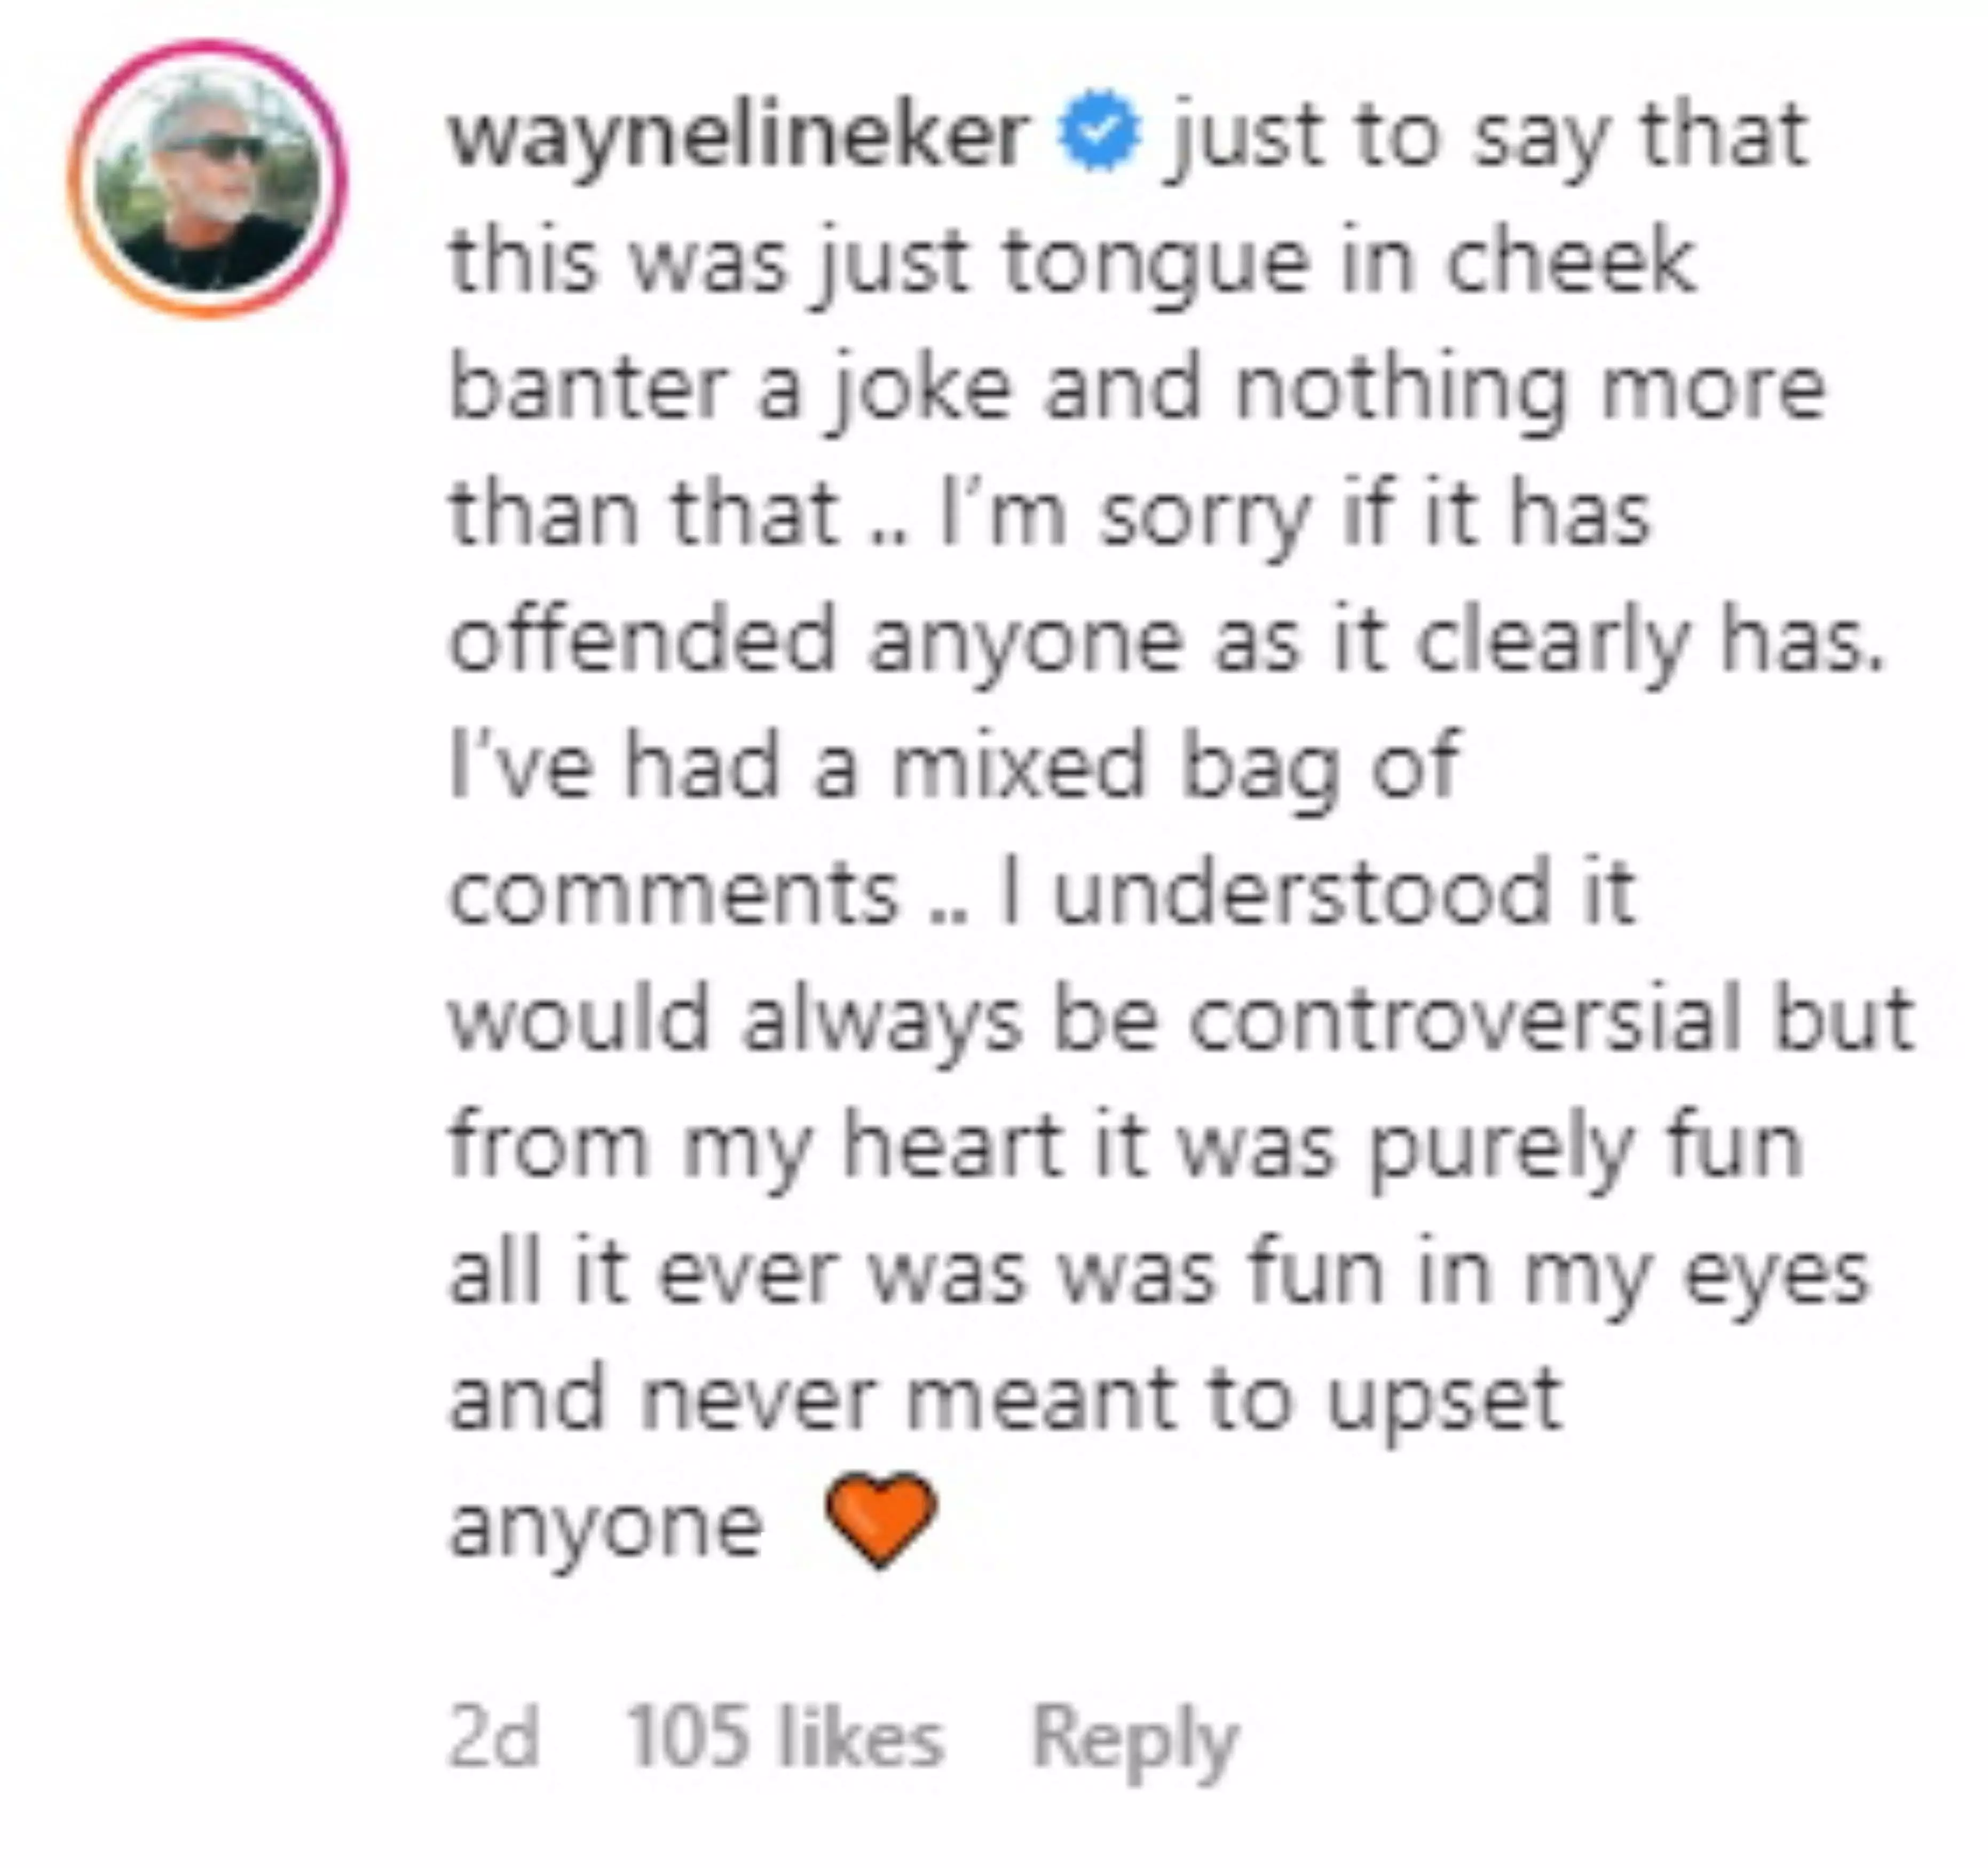 Wayne said his post was 'tongue-in-cheek' (